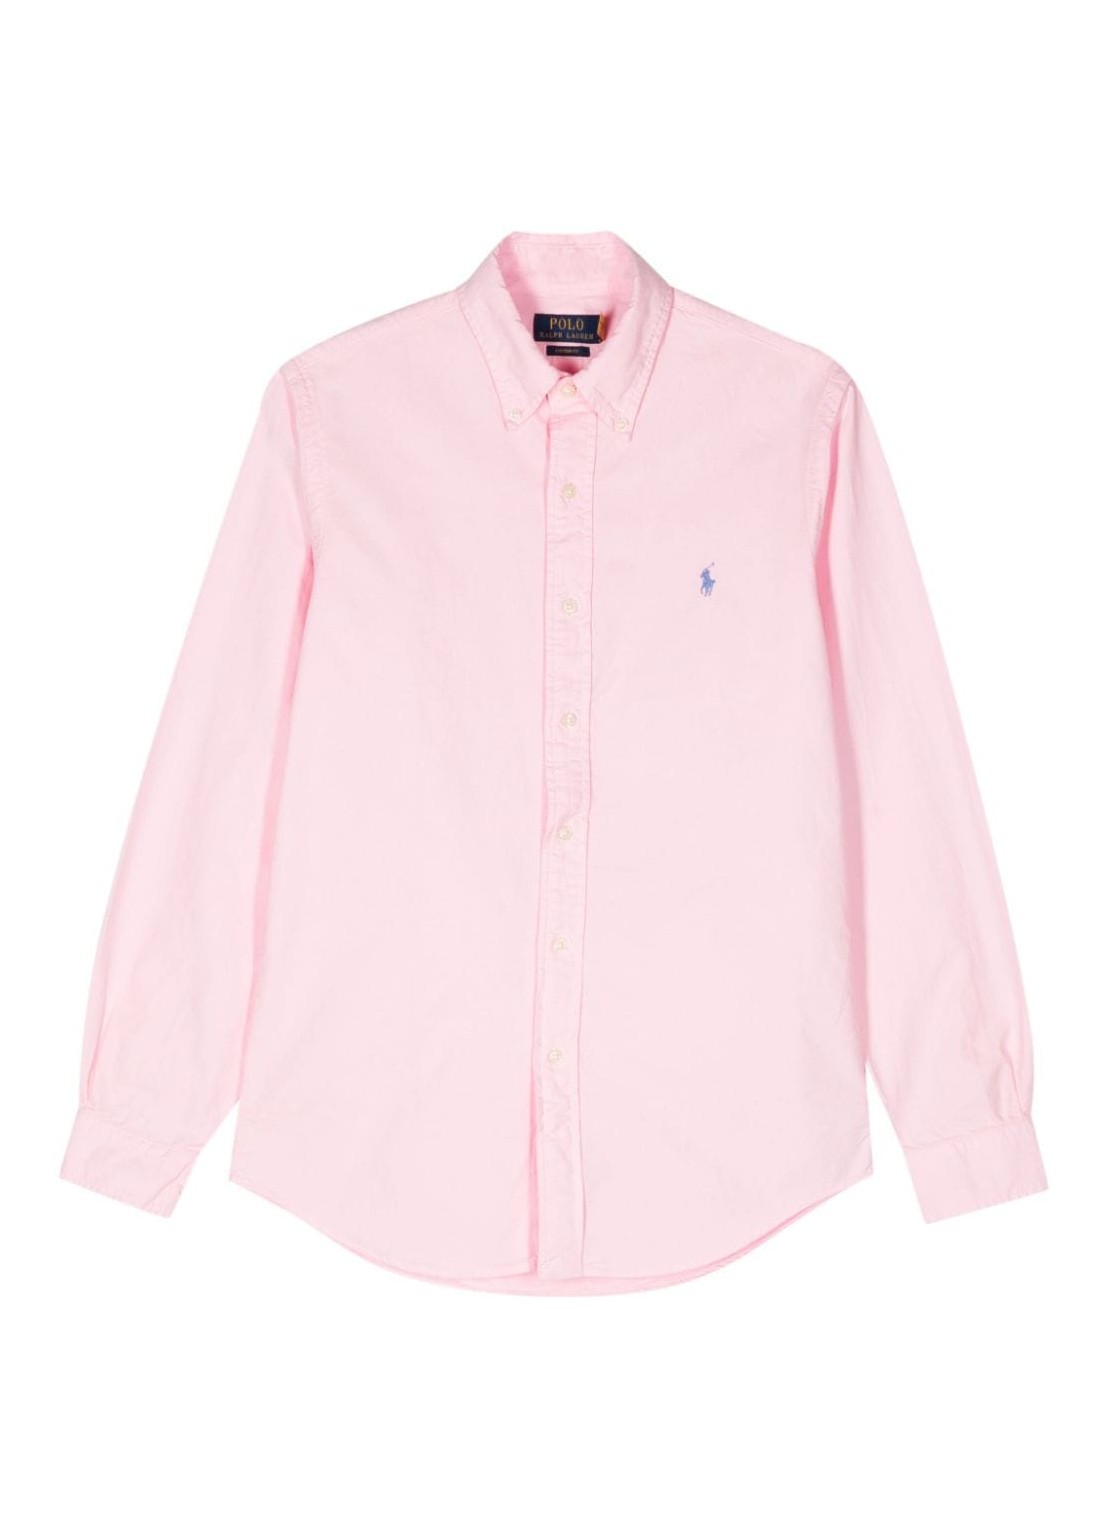 Camiseria polo ralph lauren shirt man cubdppcs-long sleeve-sport shirt 710805564027 carmel pink tall